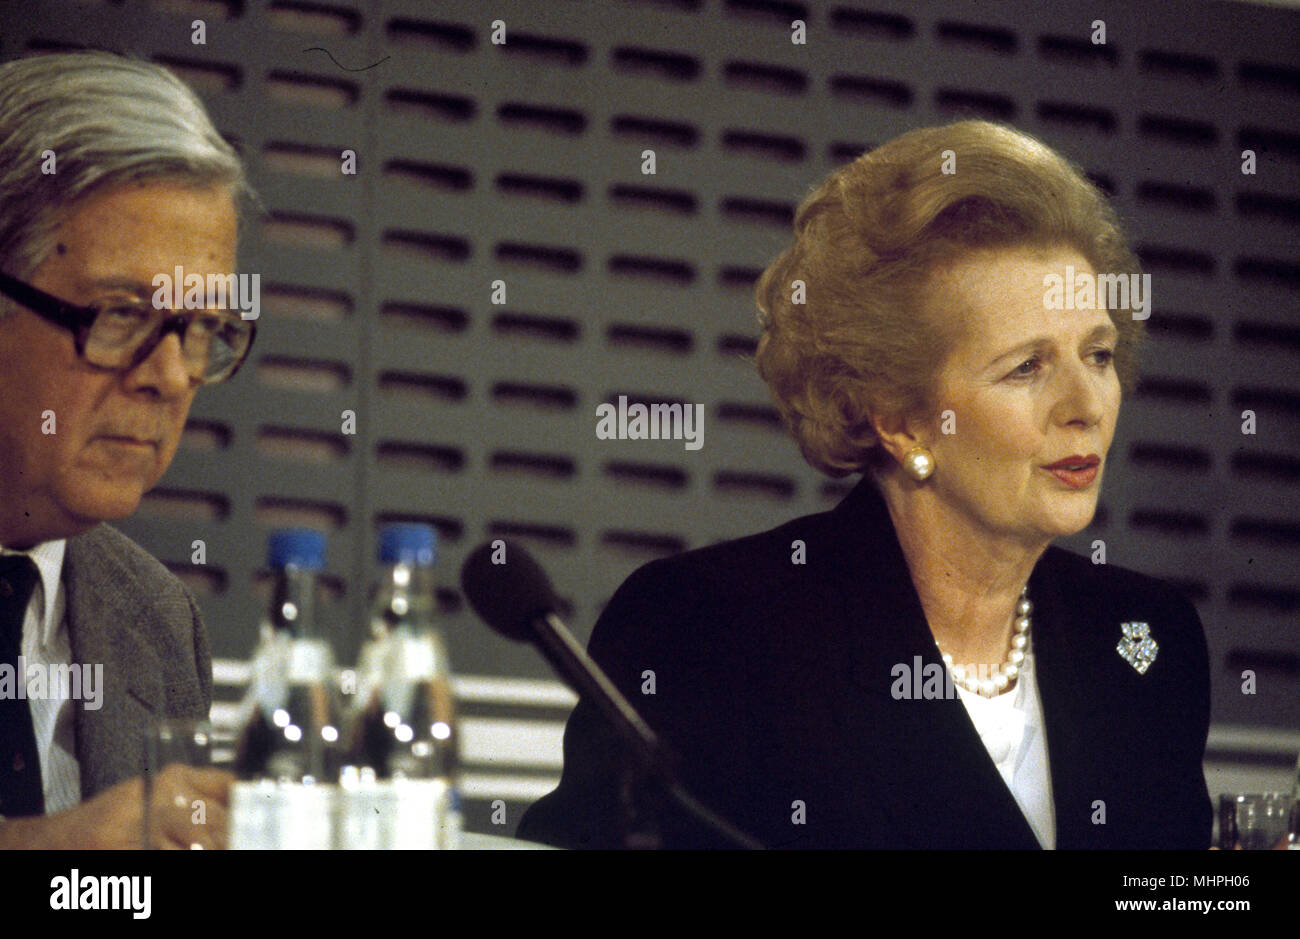 Margaret Thatcher (Primer Ministro británico) y Geoffrey Howe (Secretario de Relaciones Exteriores) en una conferencia de prensa en Londres, poco después de una visita importante por Mikhail Gorbachev, Presidente ruso. Fecha: circa 1984 Foto de stock